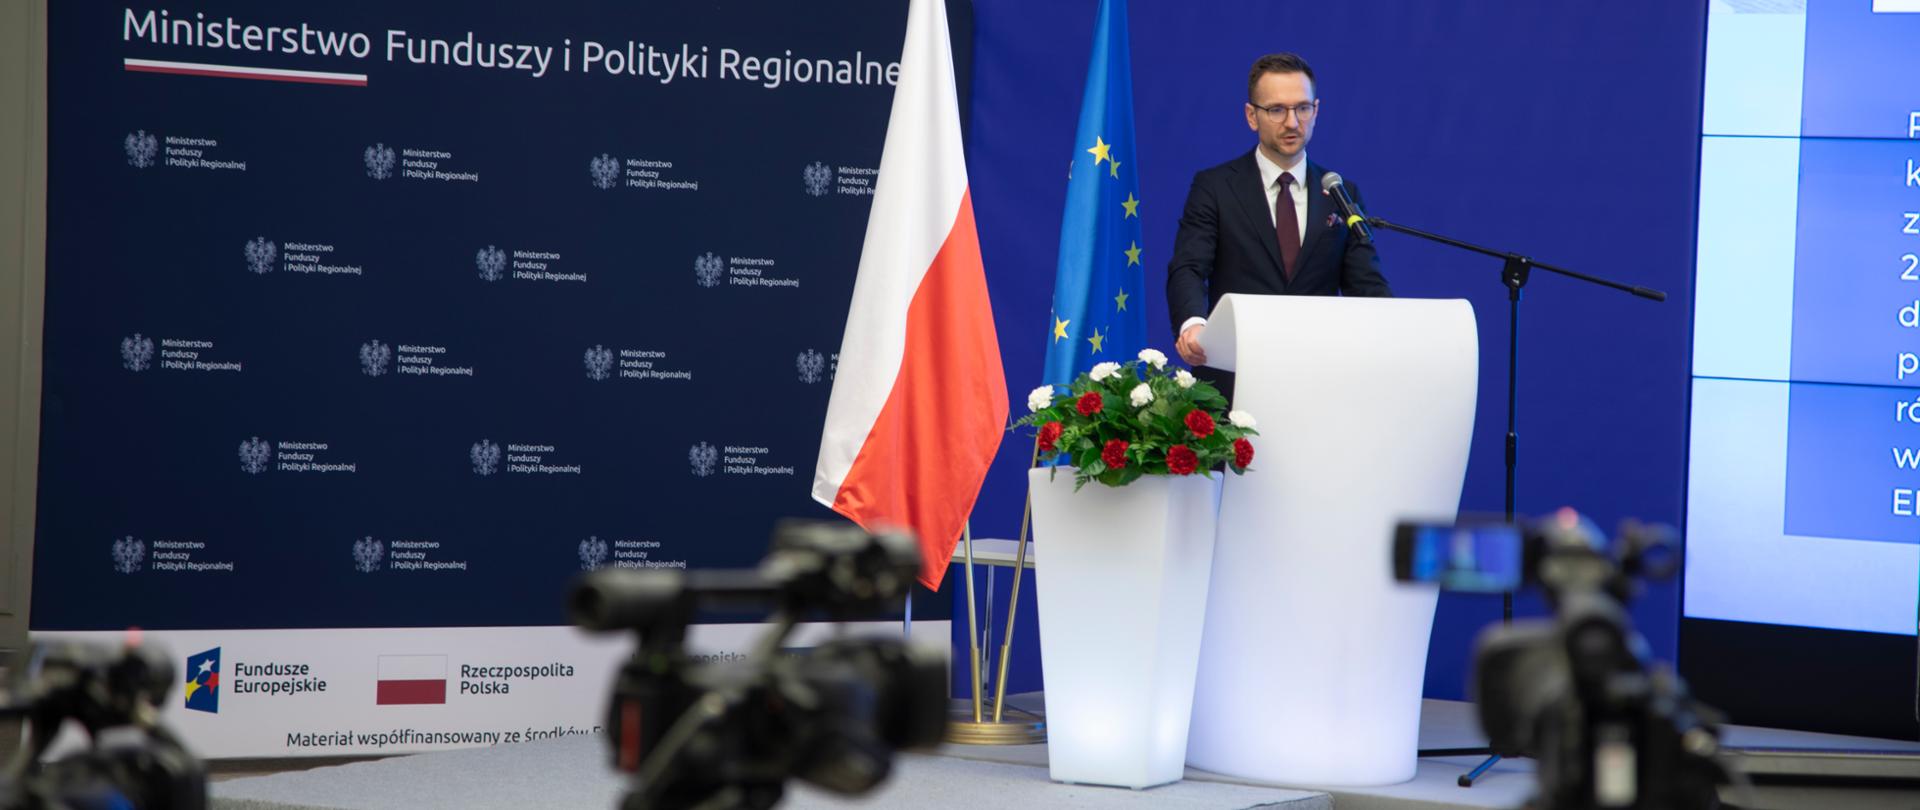 Wiceminister Waldemar Buda stoi w mównicy. Obok niego kwiaty w donicy i flagi UE i PL. Za jego plecami po prawej stronie na ekranie wyświetlona jest prezentacja. Po lewej ścianka z napisem Ministerstwo Funduszy i Polityki Regionalnej. 